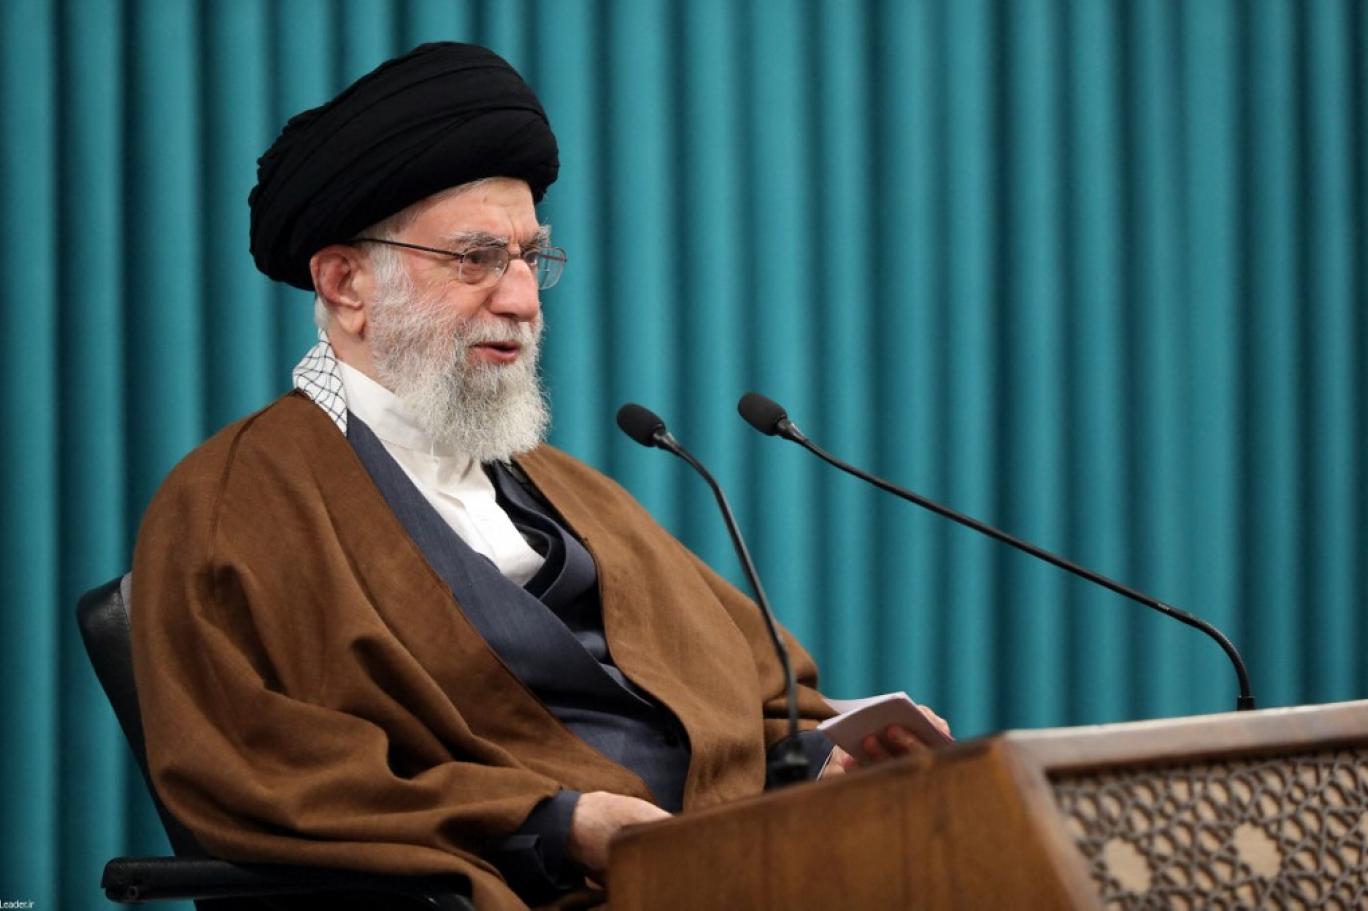 خامنئي يعلق على سقوط طائرة الرئيس الإيراني: “أعمال البلاد ستستمر بشكل منظم وجدي” (فيديو)